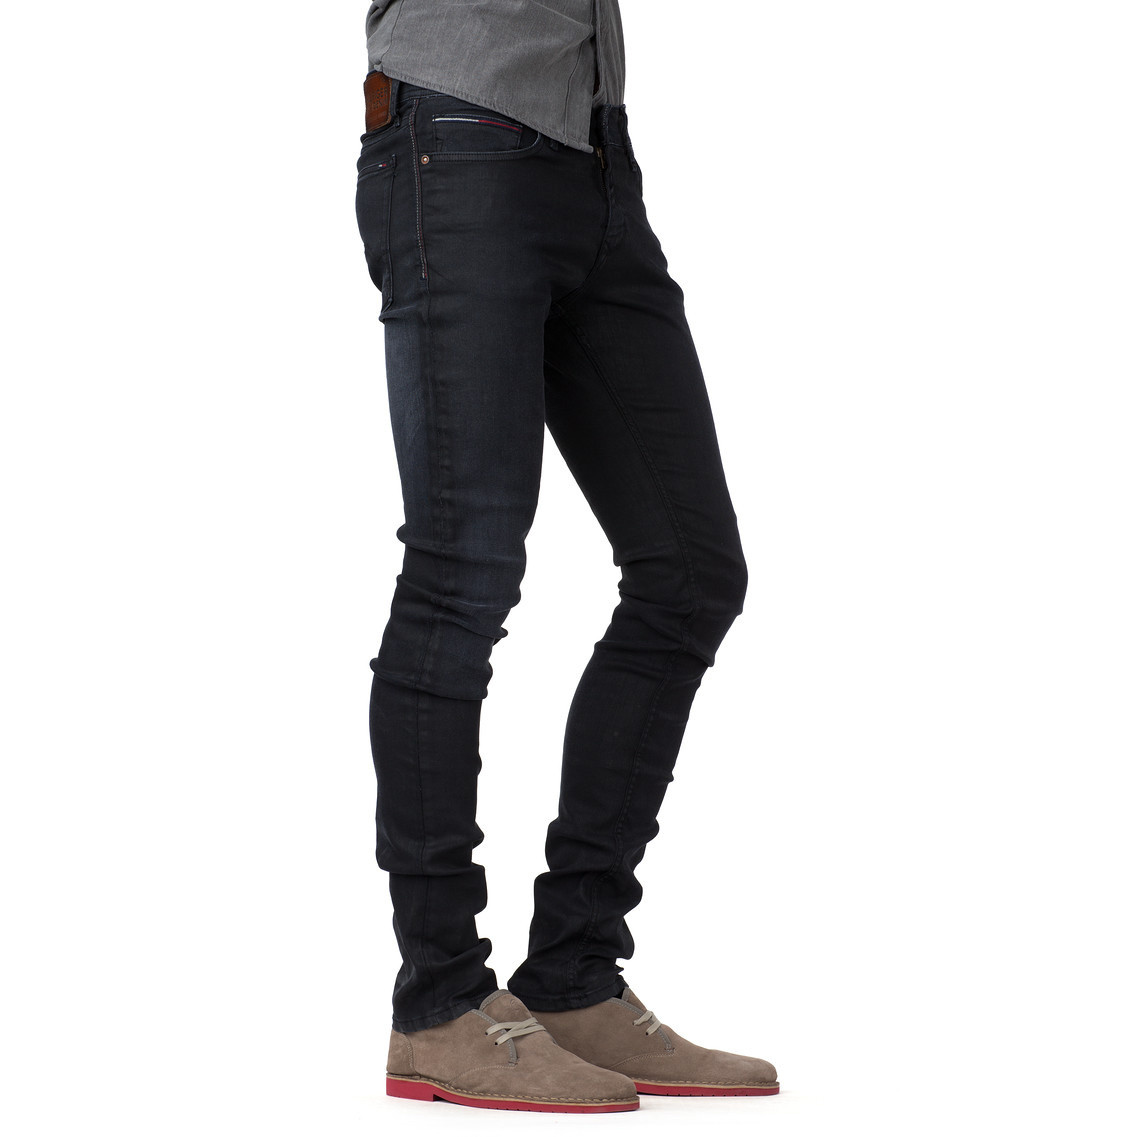 tommy hilfiger denim jeans mens off 64% - daytonmortgagebankers.org